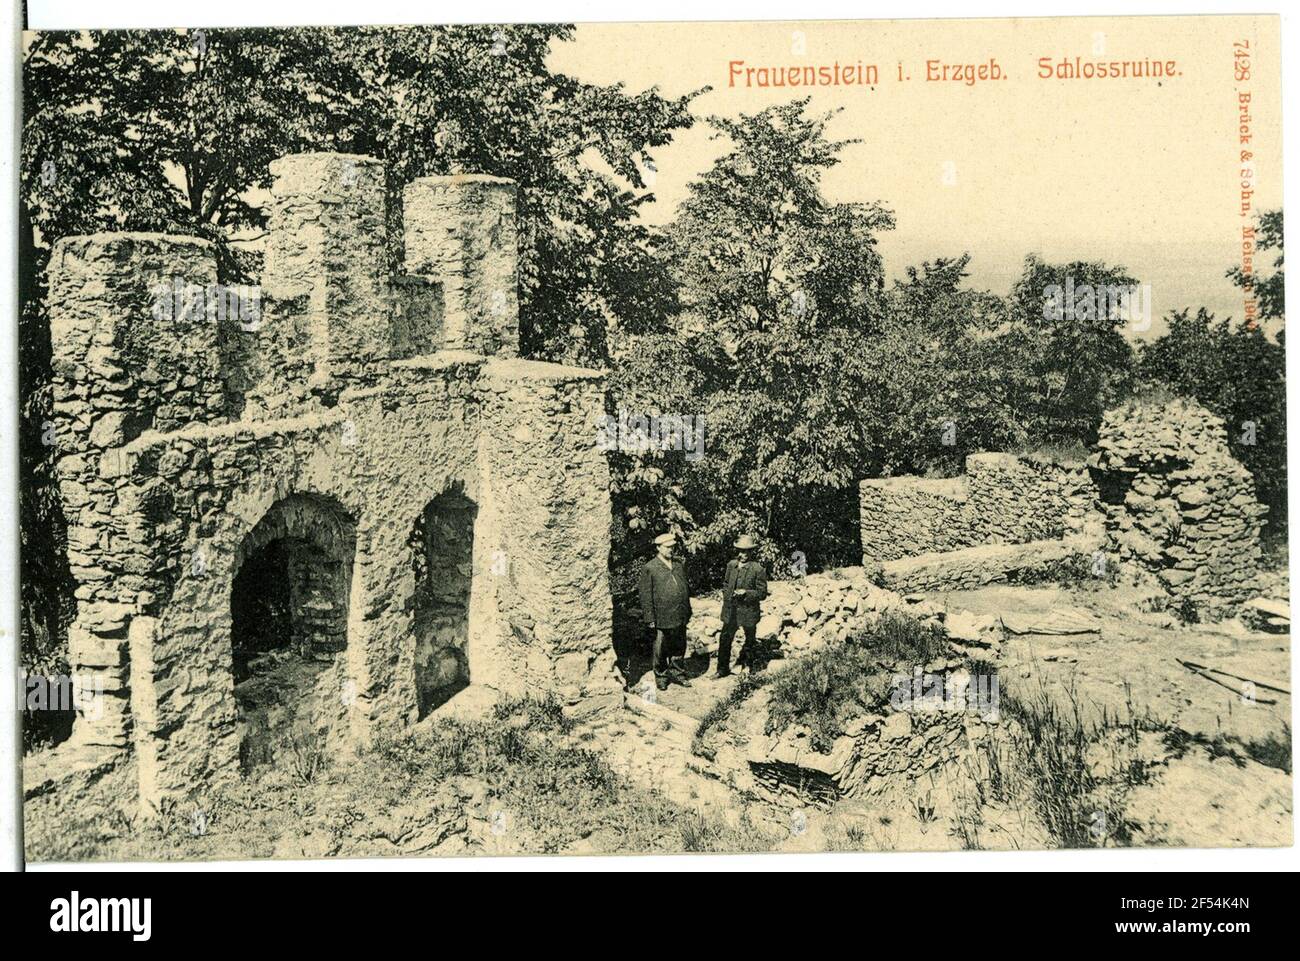 Ruine Frauenstein. Schlossruine Stockfoto